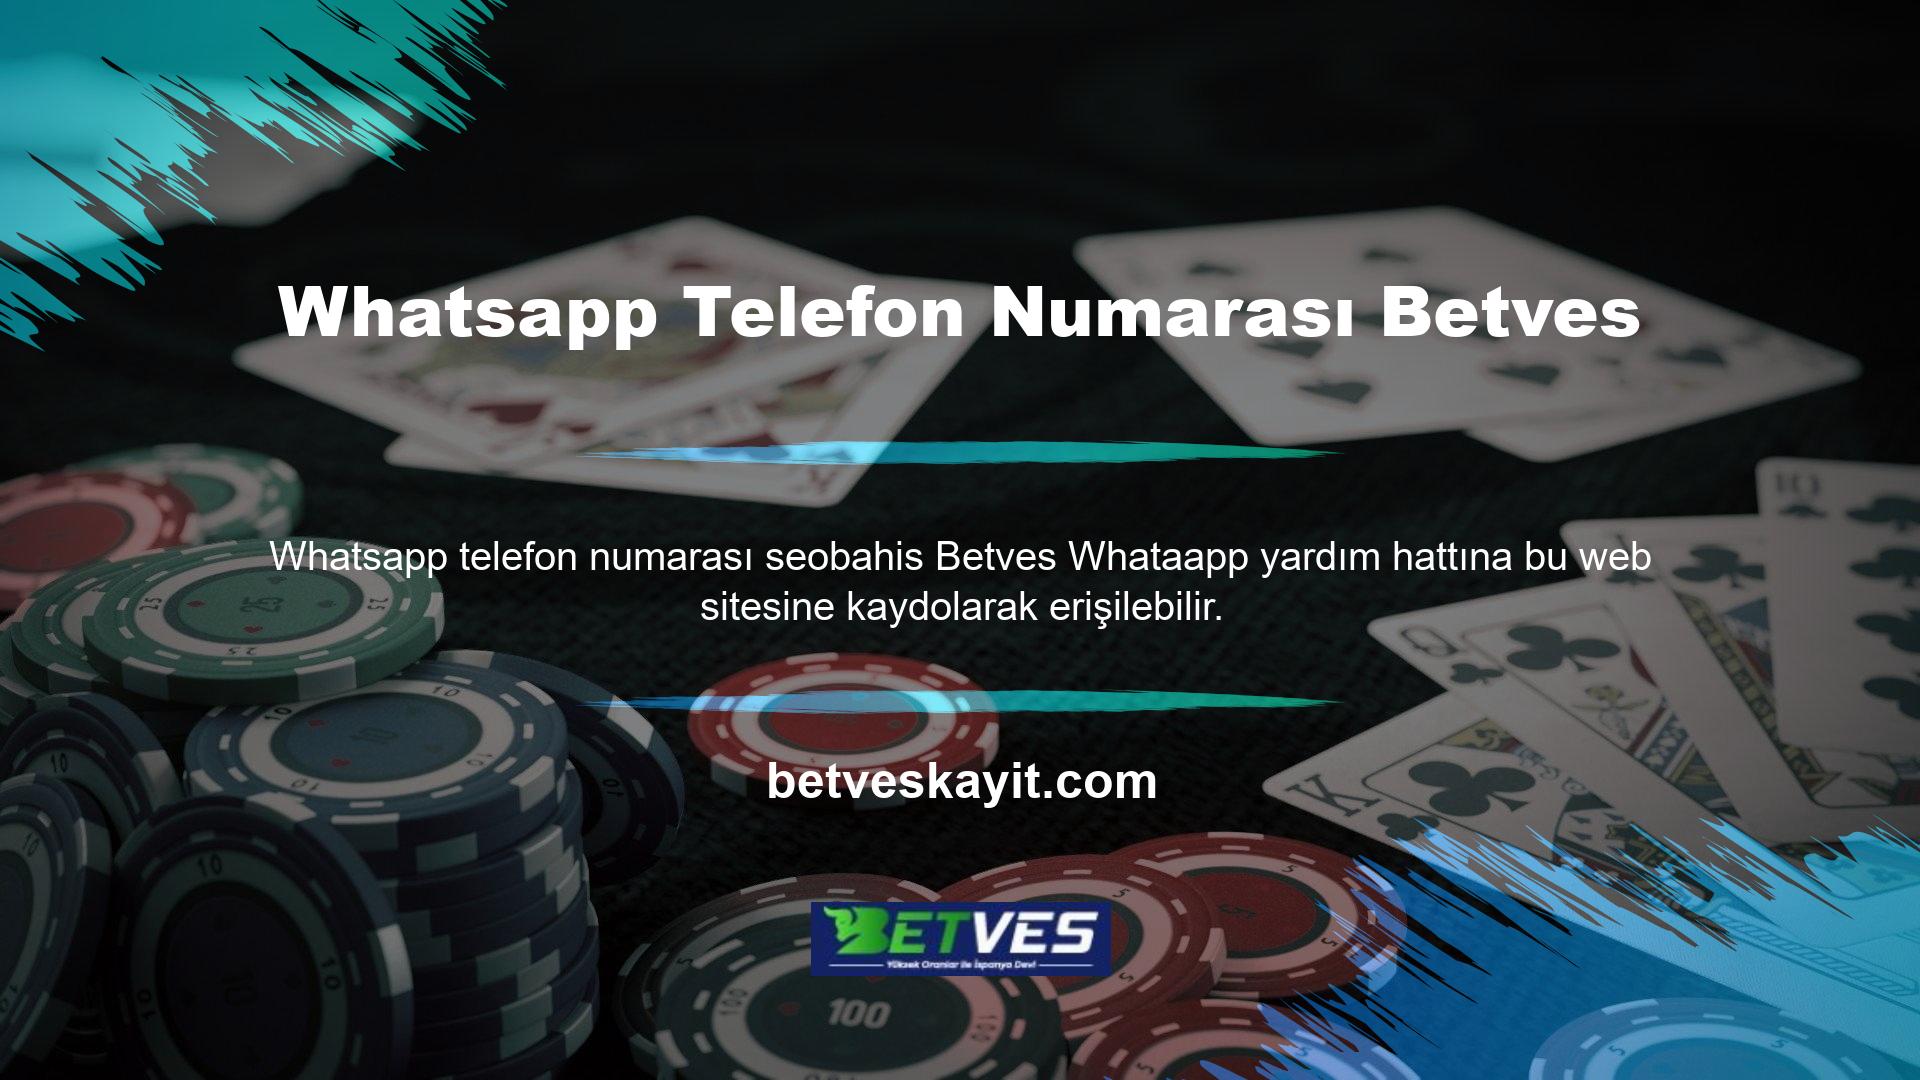 Whatsapp iletişim numarası web sitesinin iletişim bilgilerinden alınabilir ve uygulamadan yardım almak için kullanılabilir